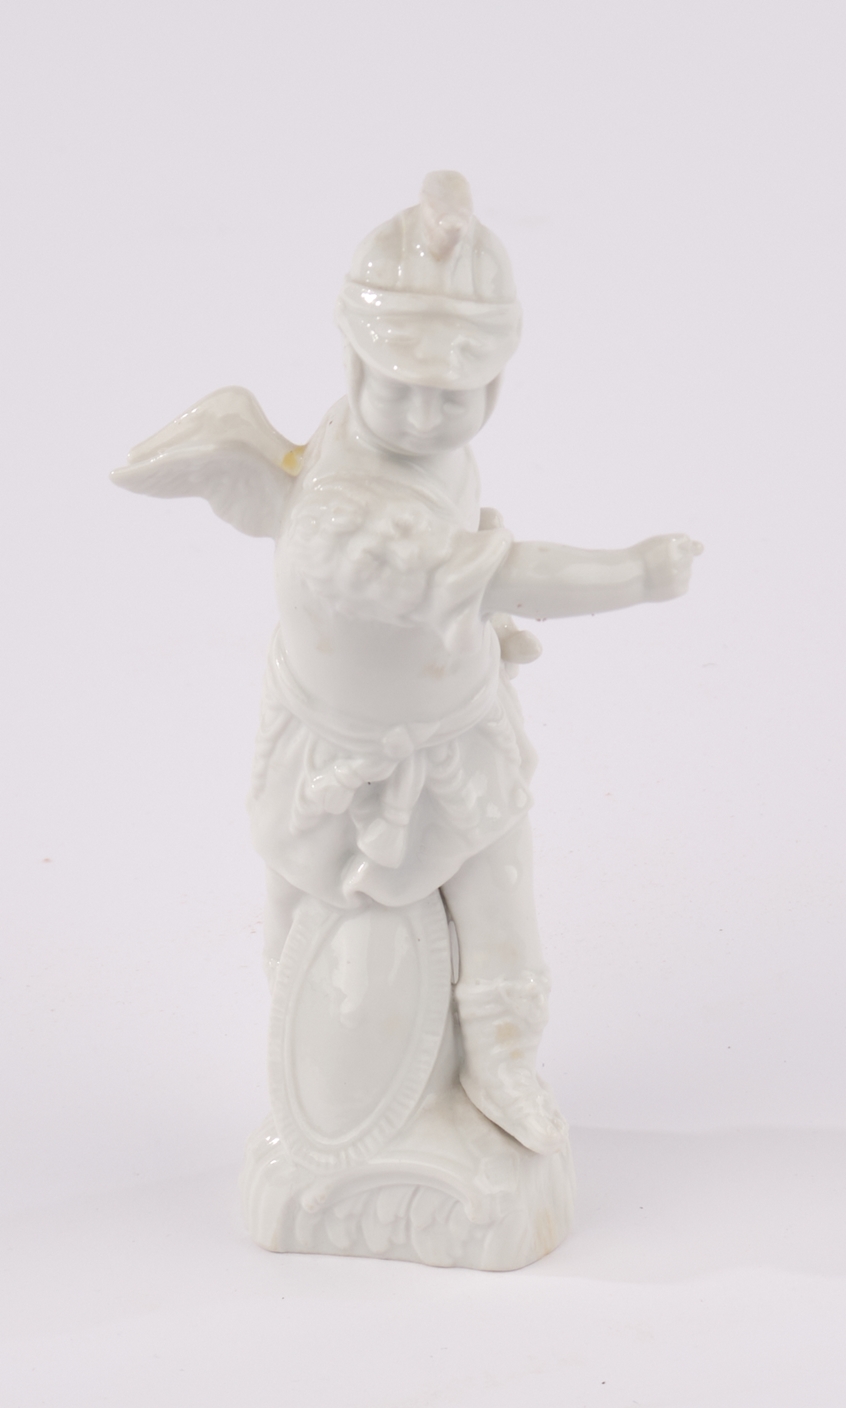 Porzellanfigur, "Putto als Krieger", KPM Berlin, Weißporzellan, 12 cm hoch, ein Flügel geklebt